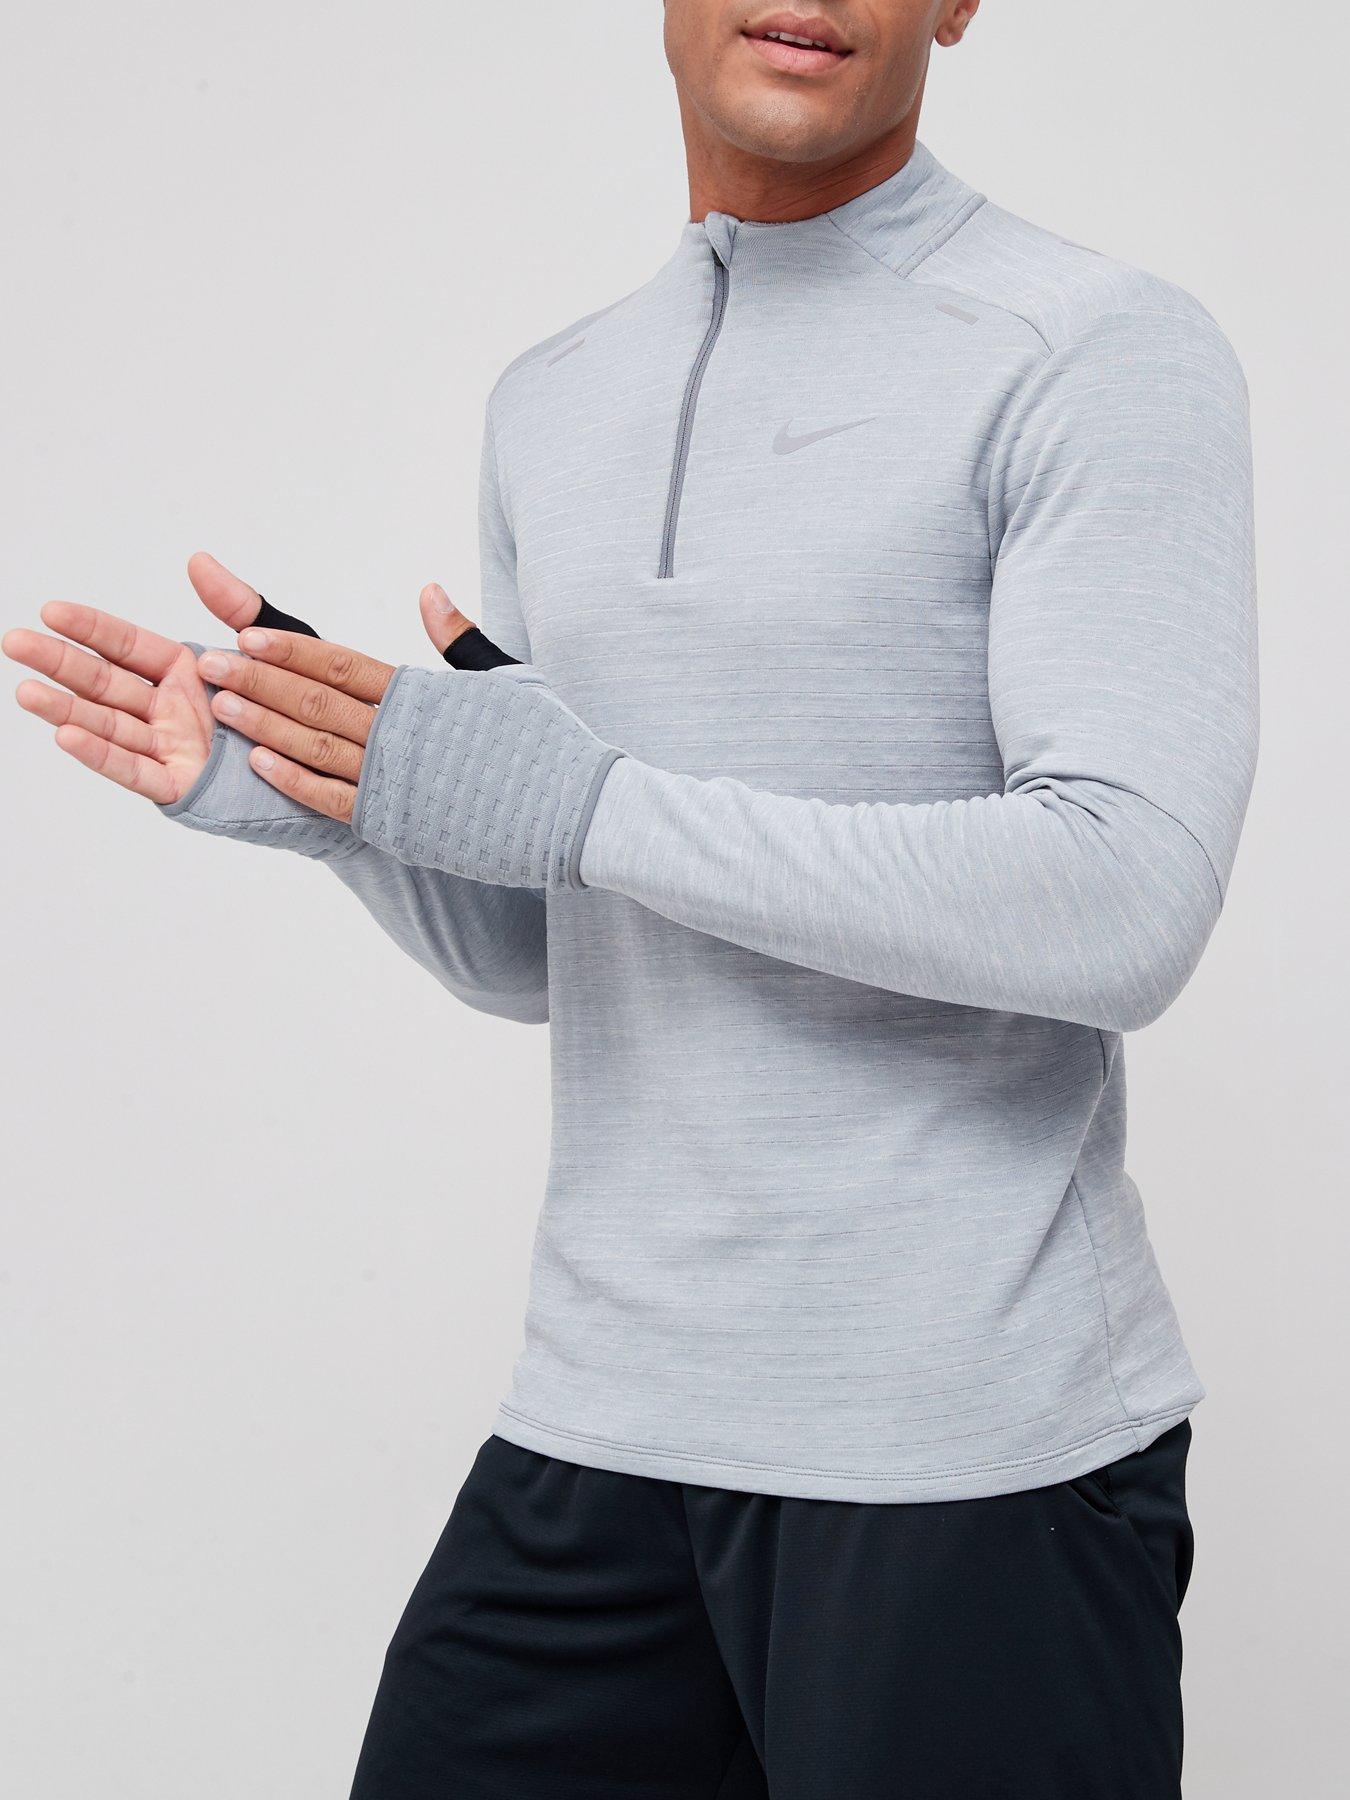 Hoodies & Sweatshirts Run Repel Element Winterized 1/2 Zip Top - Grey